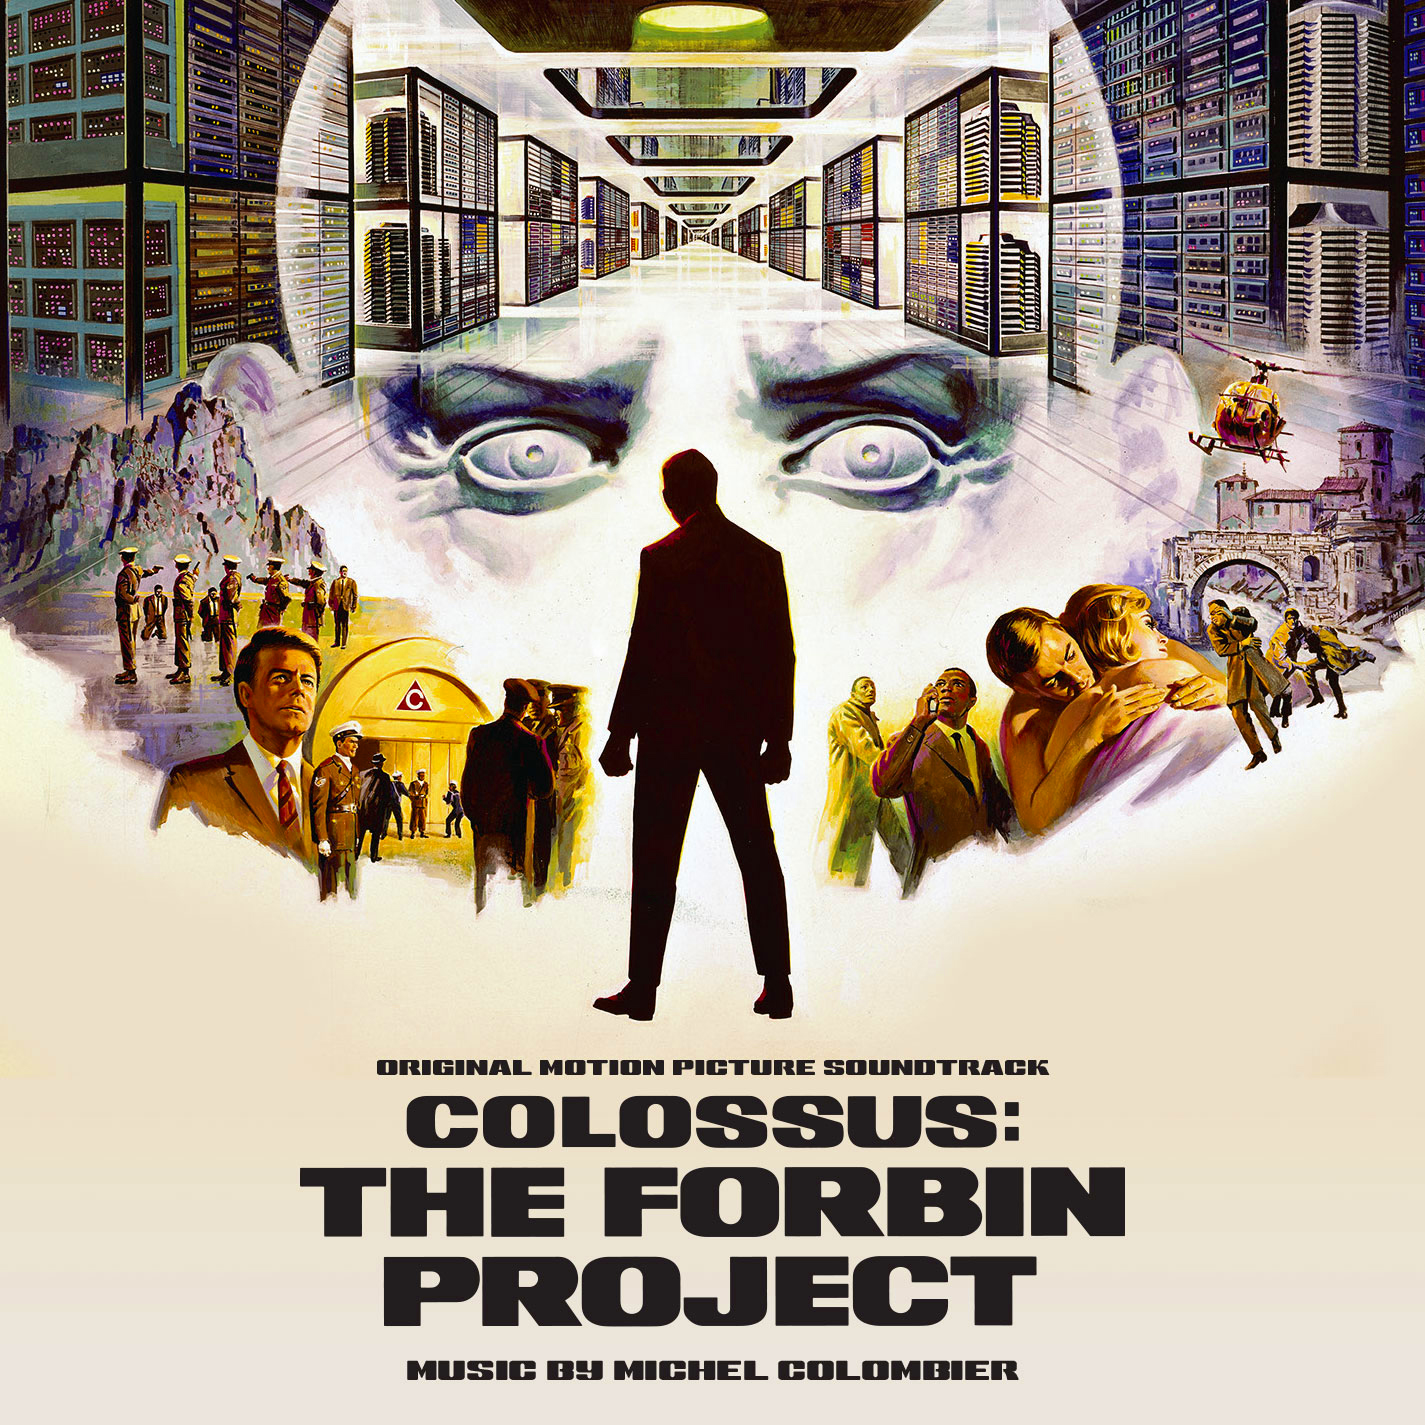 Le Cerveau d'acier (Colossus: The Forbin Project)